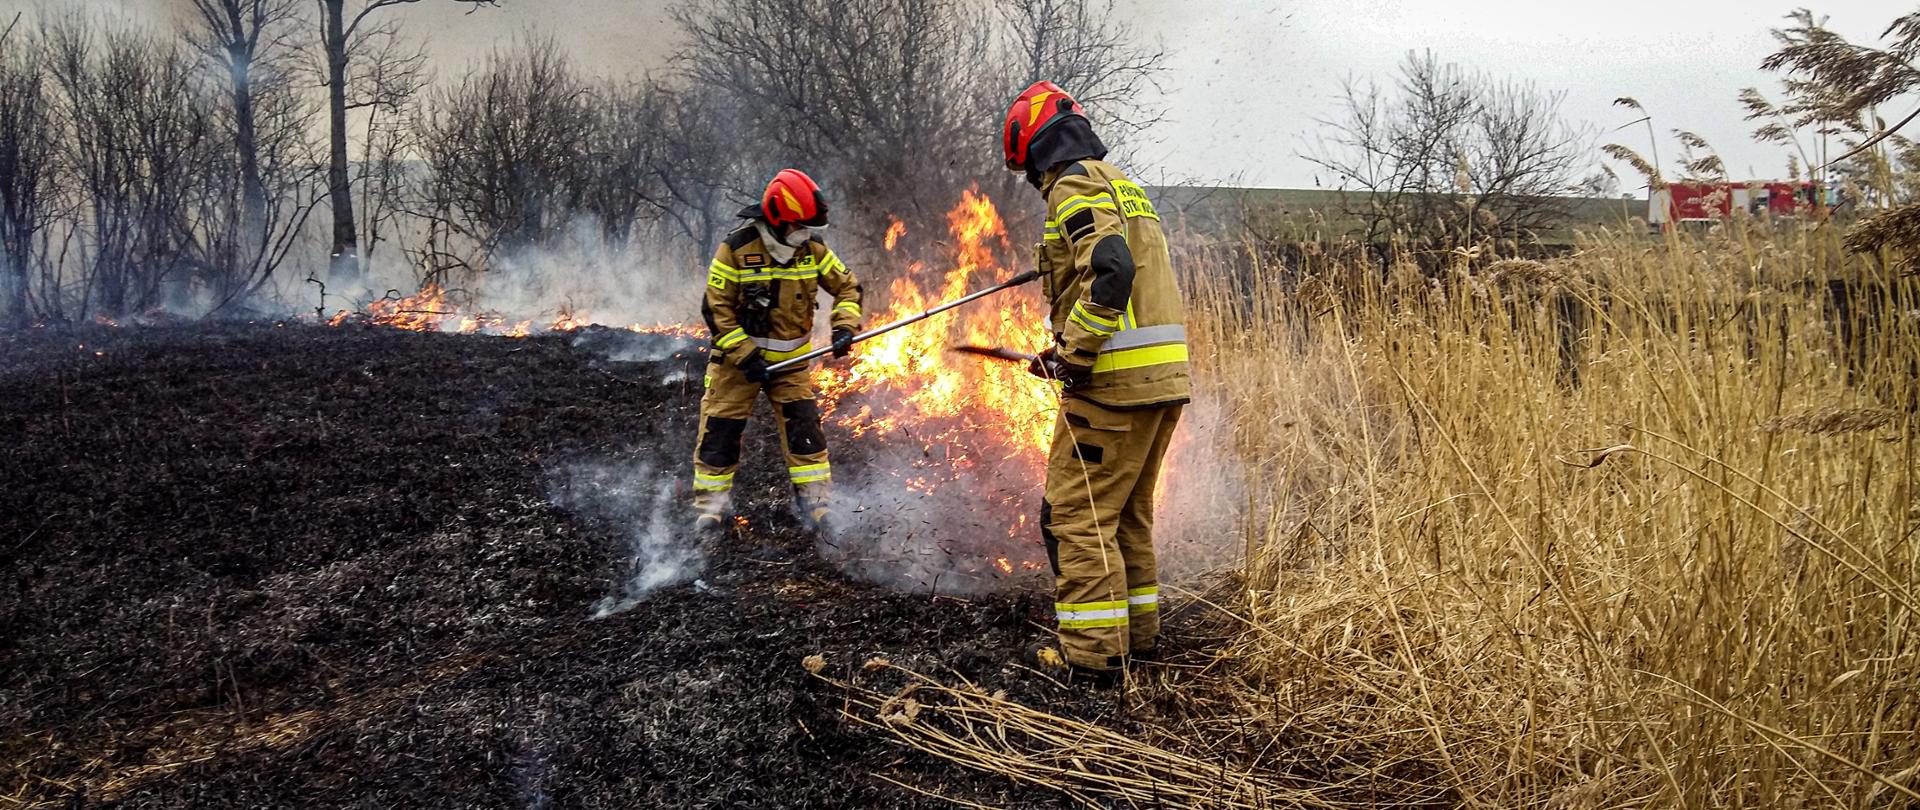 Na zdjęciu wśród palącej się suchej trzciny znajduje się dwóch strażaków, którzy gaszą palącą się trawę. Strażacy ubrani są w ubrania specjalne, na głowie mają założone hełmy, a na twarzy maski filtrujące. W oddali znajdują się drzewa, pole, a także wóz strażacki.